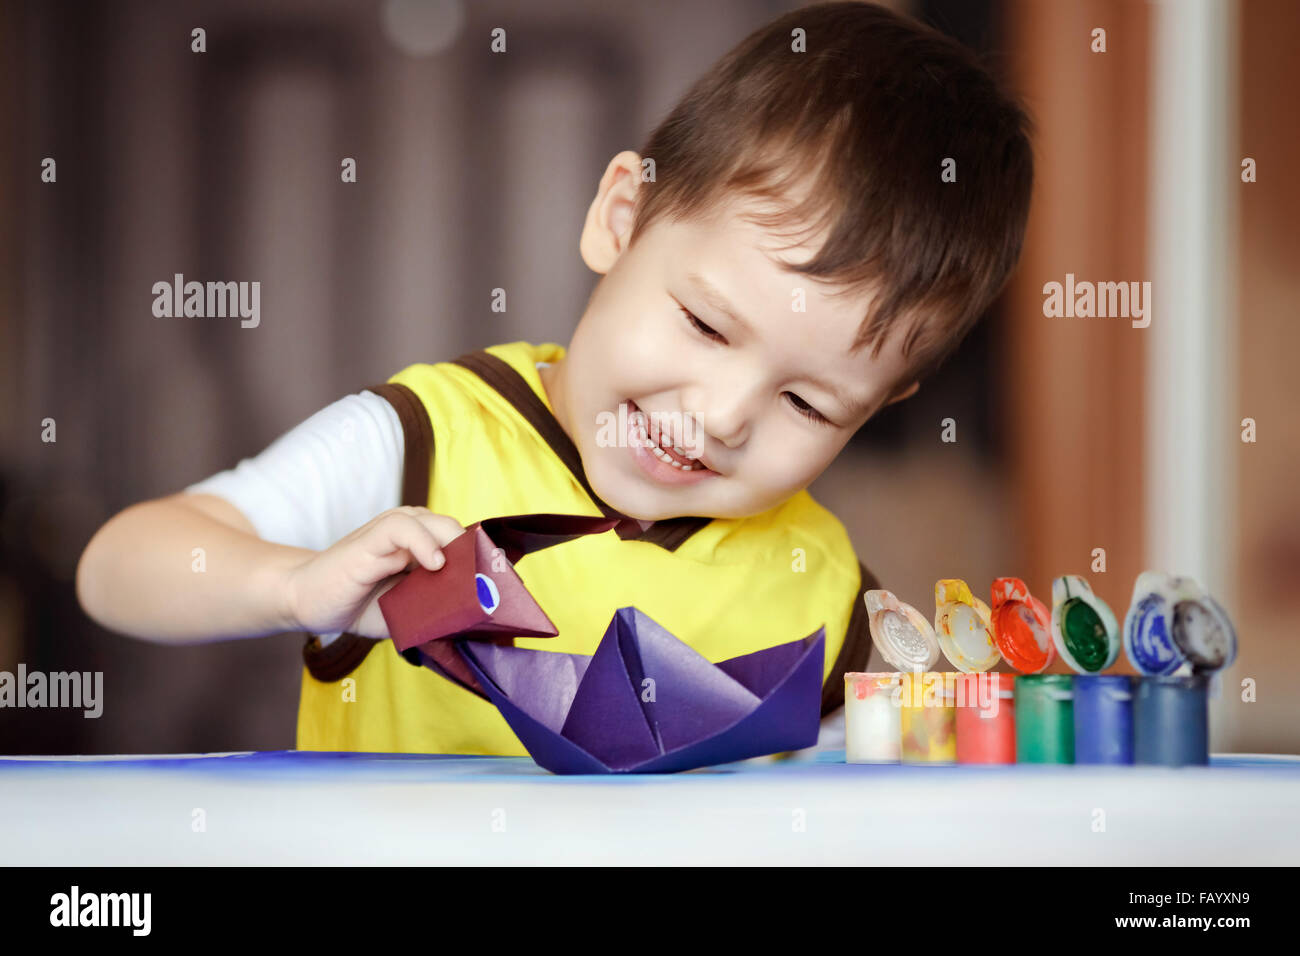 Kind spielt Seeschlacht, eine Origami-Figur Godzilla greift eine Boot, Spiele für Kinder. Die Entwicklung der Vorstellungskraft und des kreativen Denkens, Kunst Papierspielzeug zu schaffen. Violette Schiff. Stockfoto